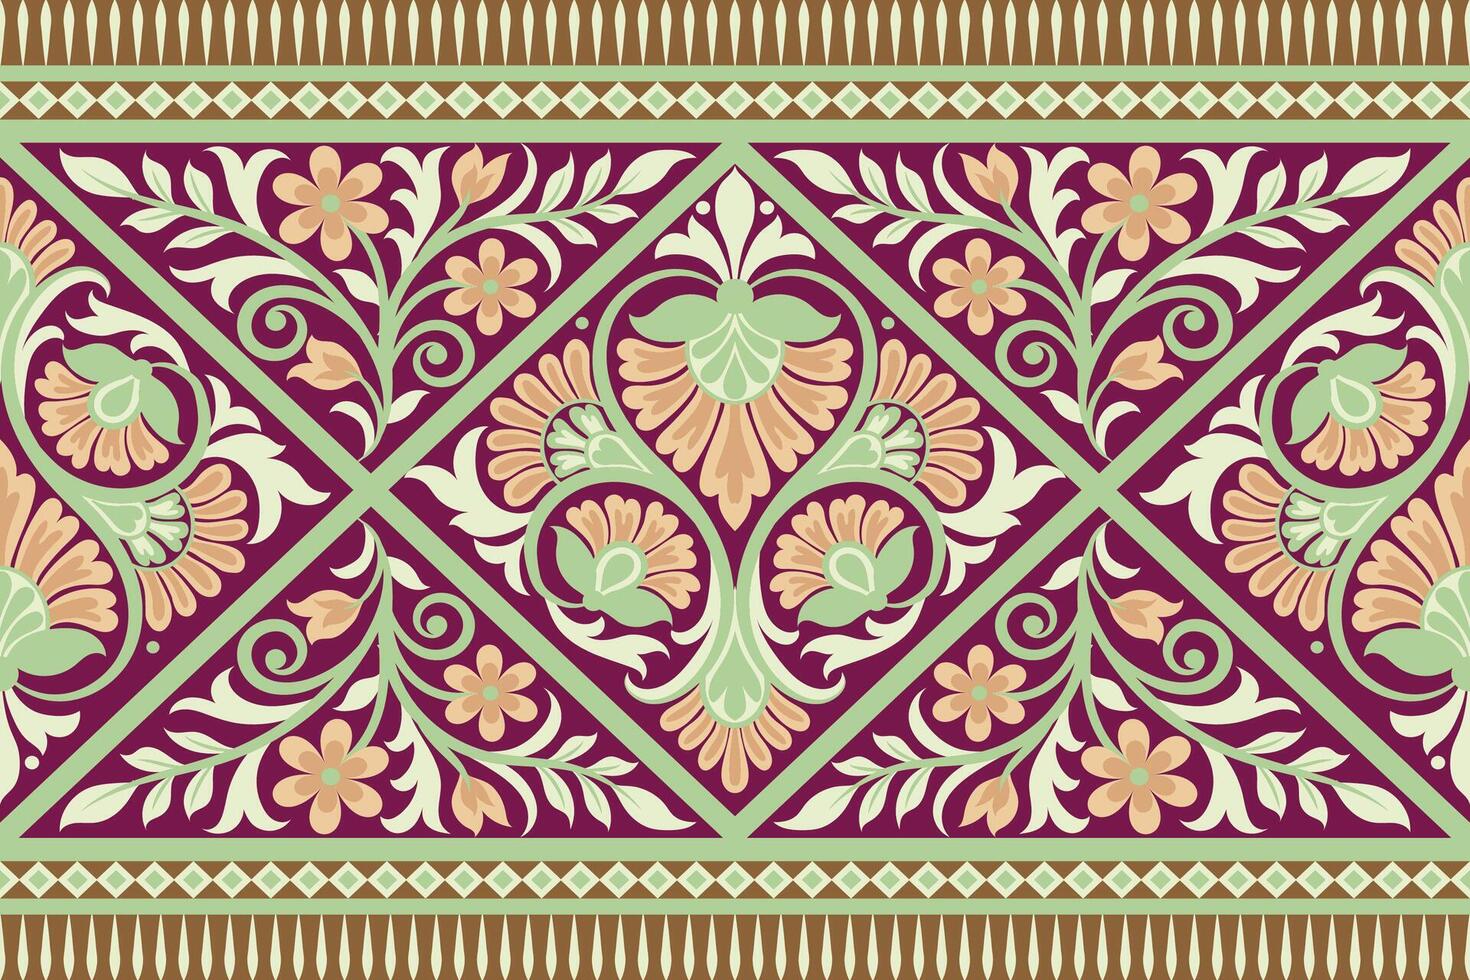 blommig sömlös bakgrund geometrisk etnisk orientalisk ikat sömlös mönster traditionell design för bakgrund, matta, tapeter, kläder, inslagning, batik, tyg, illustration broderi stil. vektor